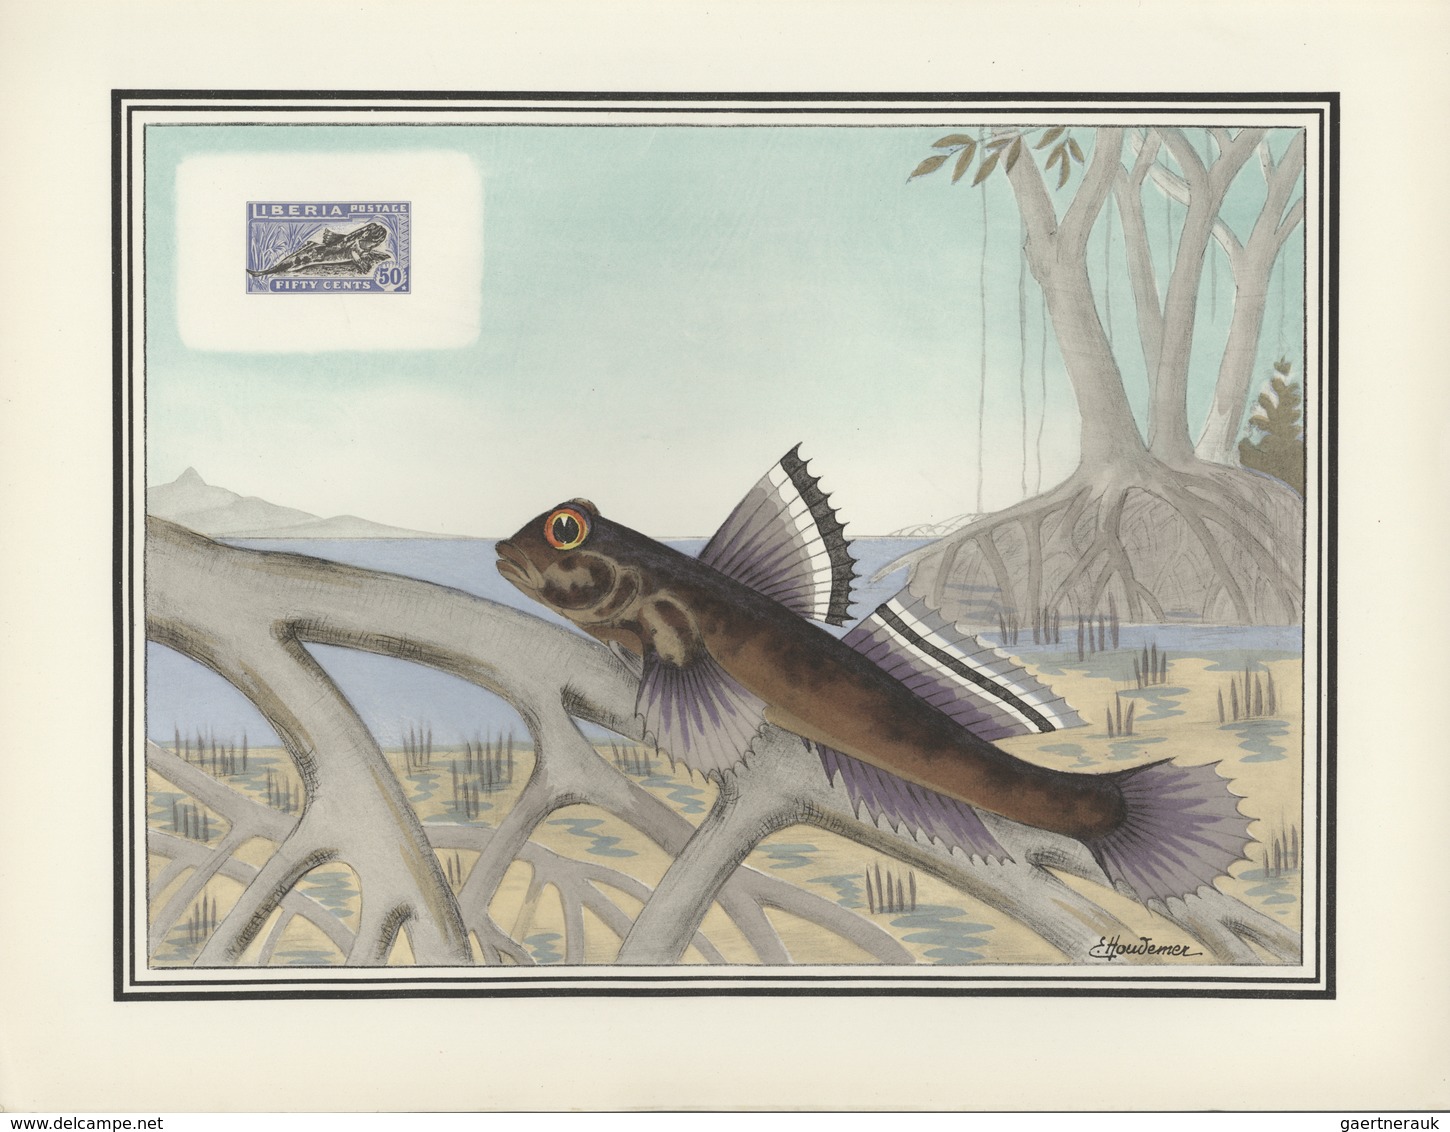 Thematik: Tiere-Fische / animals-fishes: 1955, France. "LES OISEAUX et le Timbre-Poste par F.-E. Hou